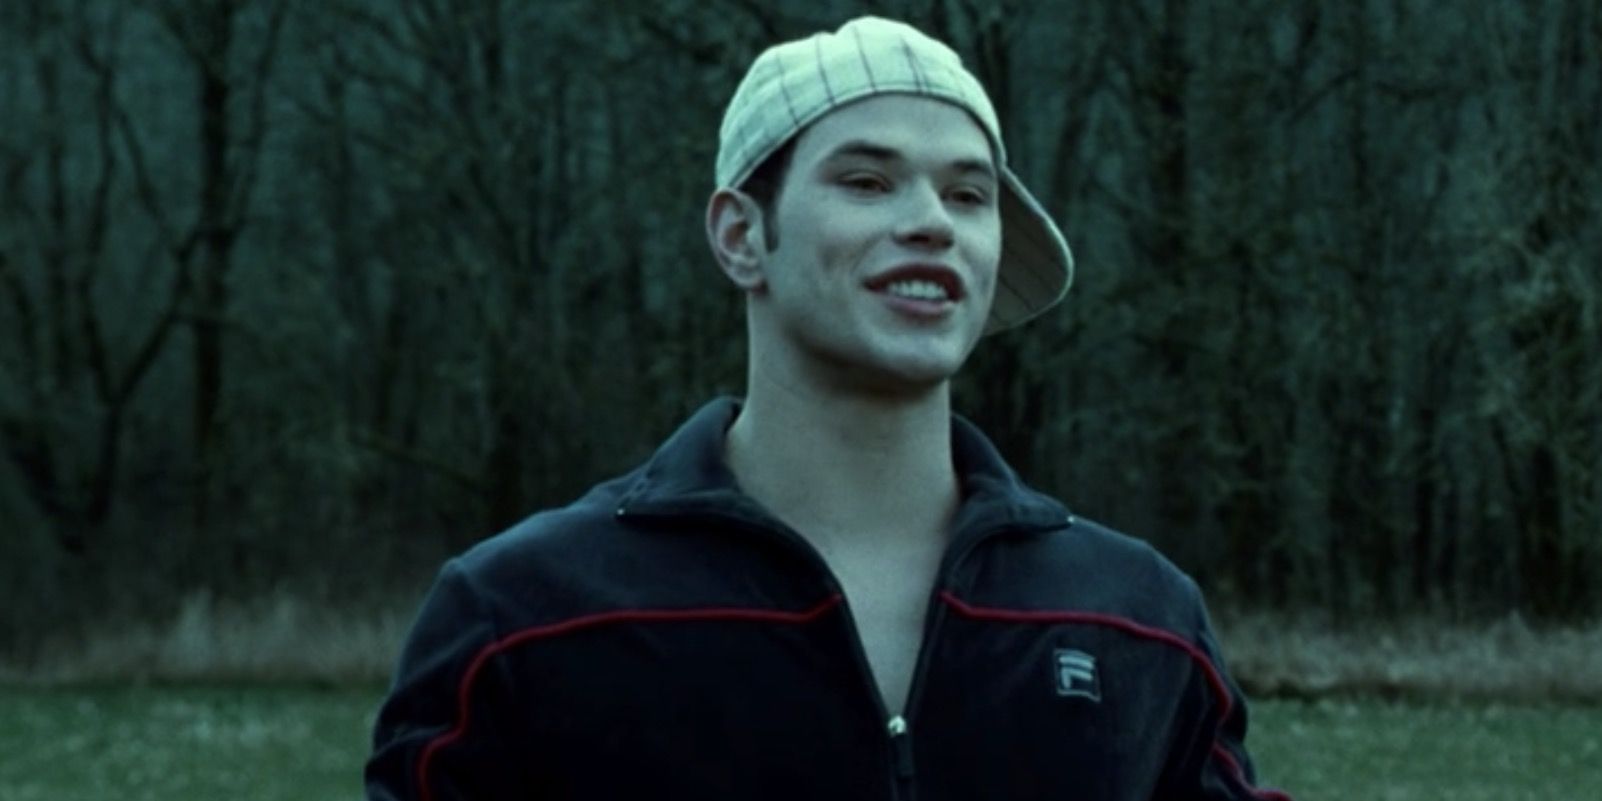 Emmett standing on baseball field wearing white baseball cap in Twilight